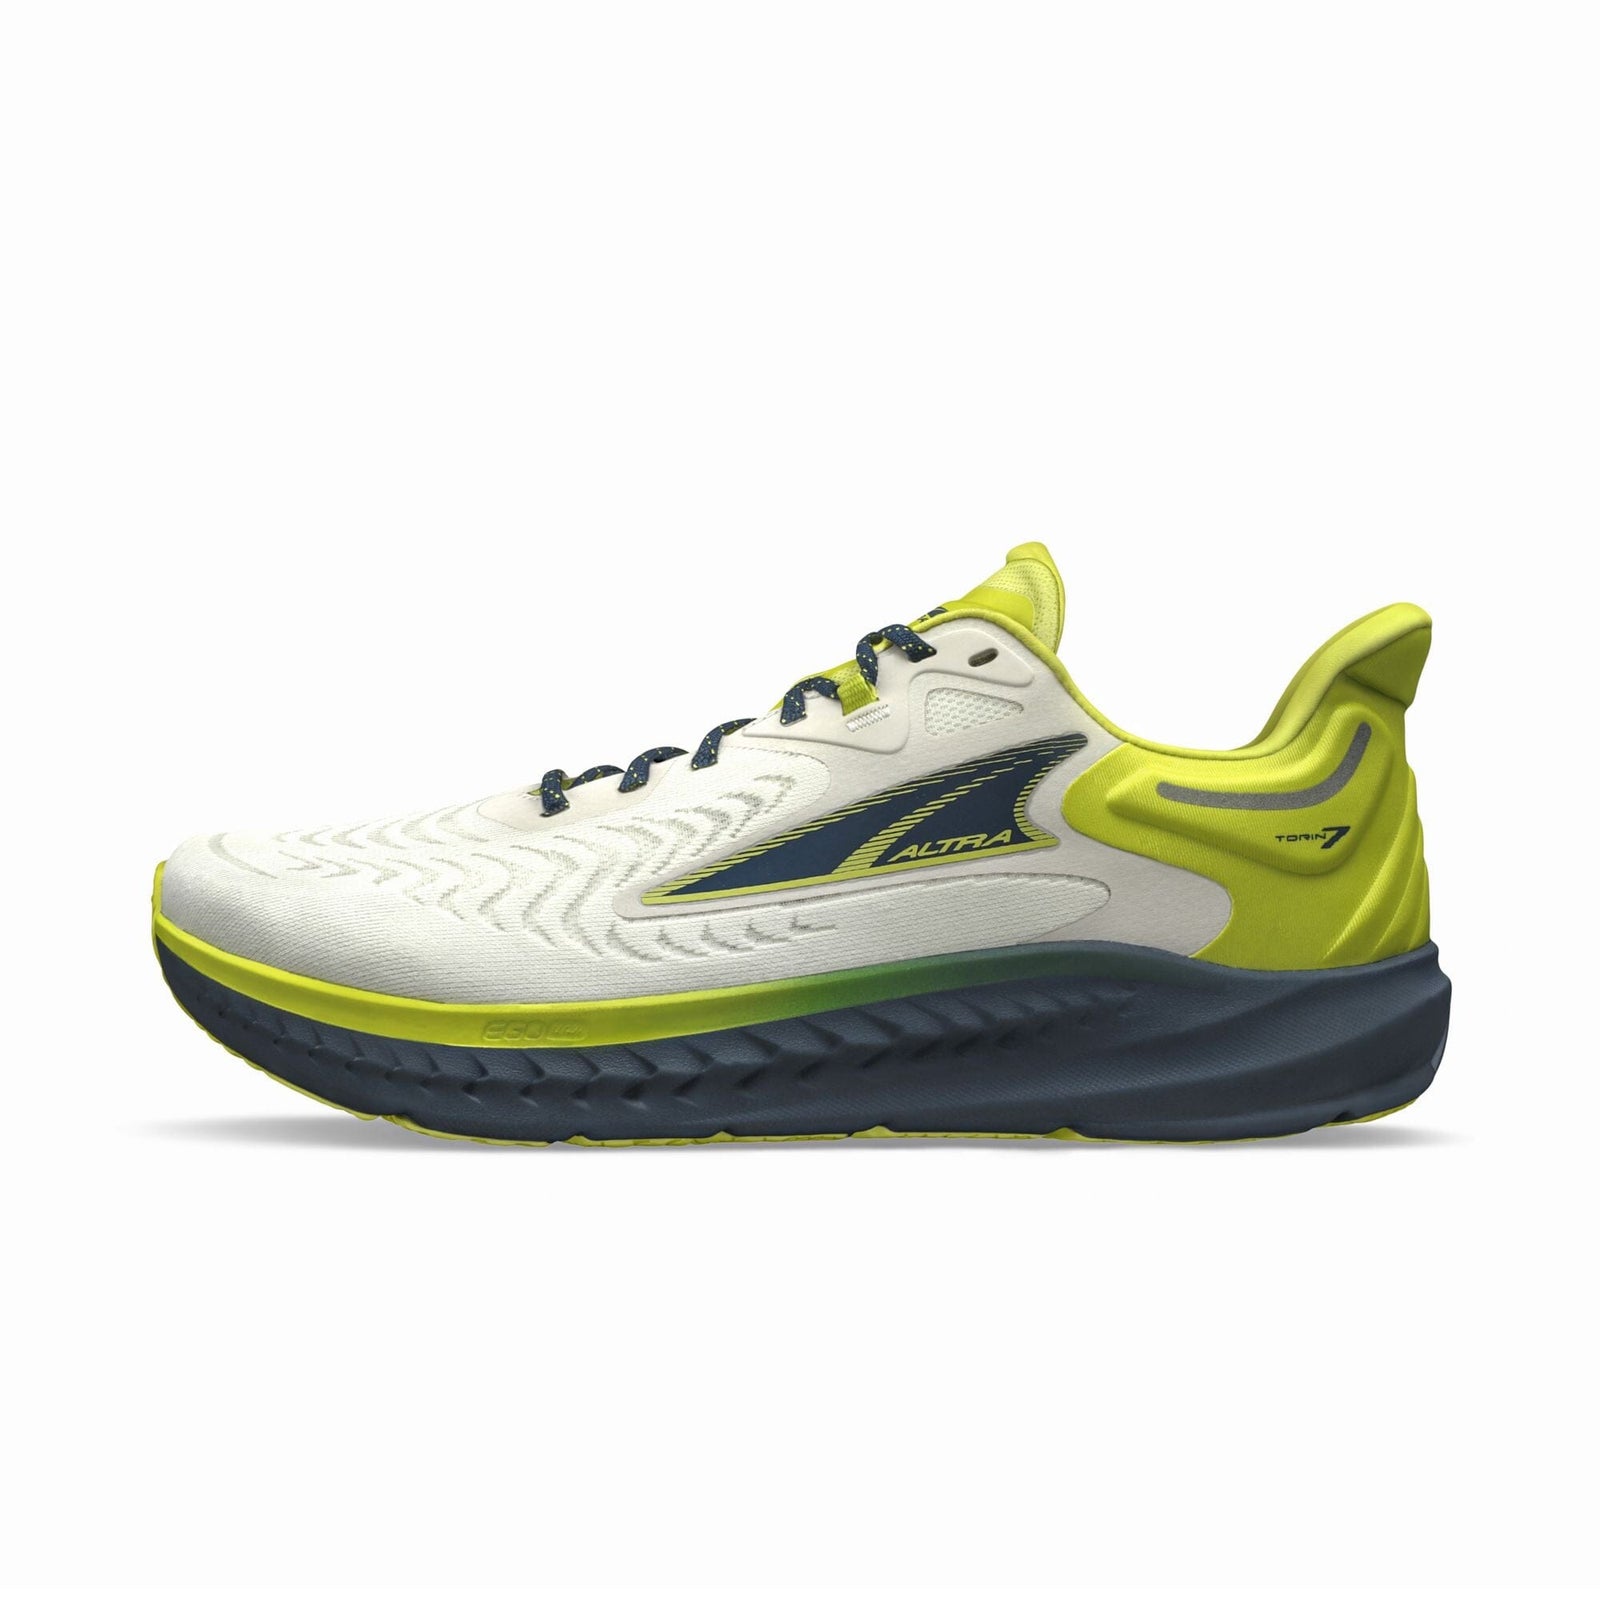 Altra Men's Torin 7 Road Running Shoes Lime/Blue US 8.5 | EUR 42 | UK 7.5 